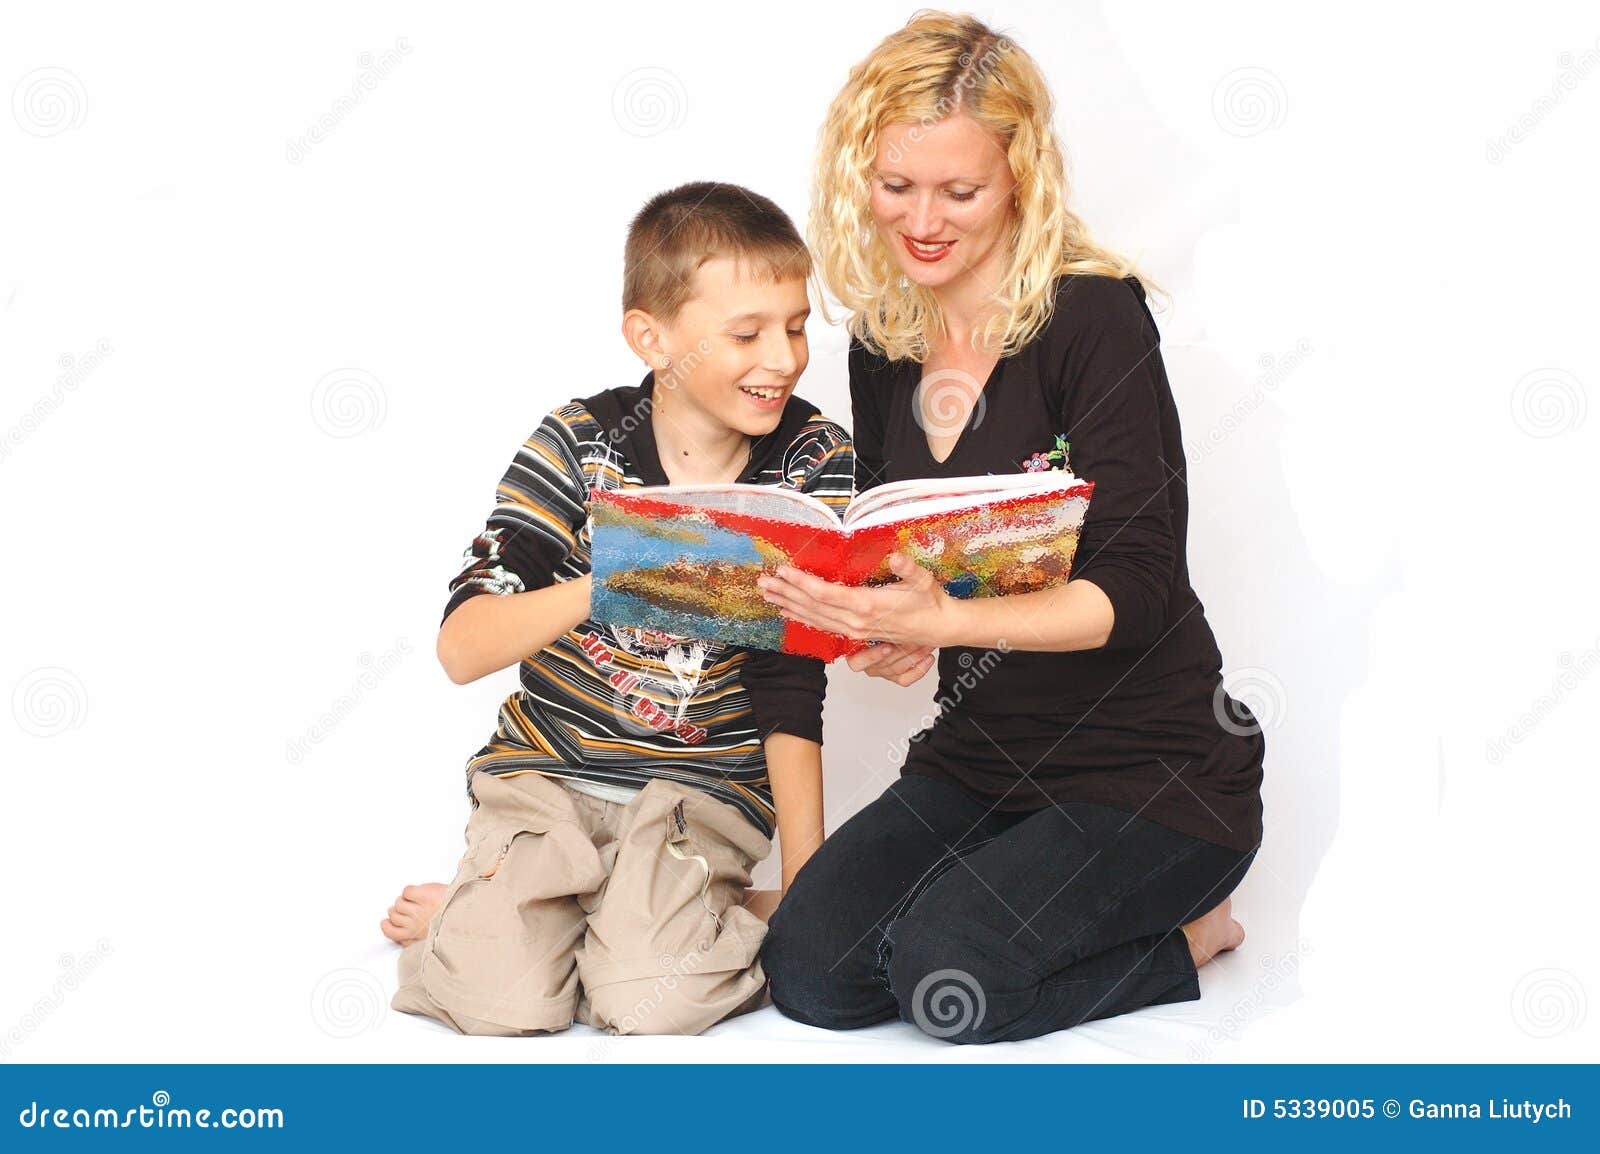 γιος ανάγνωσης μητέρων. ενδιαφέρουσες εικόνες αγοριών βιβλίων που διαβάζουν τη χαμογελώντας γυναίκα